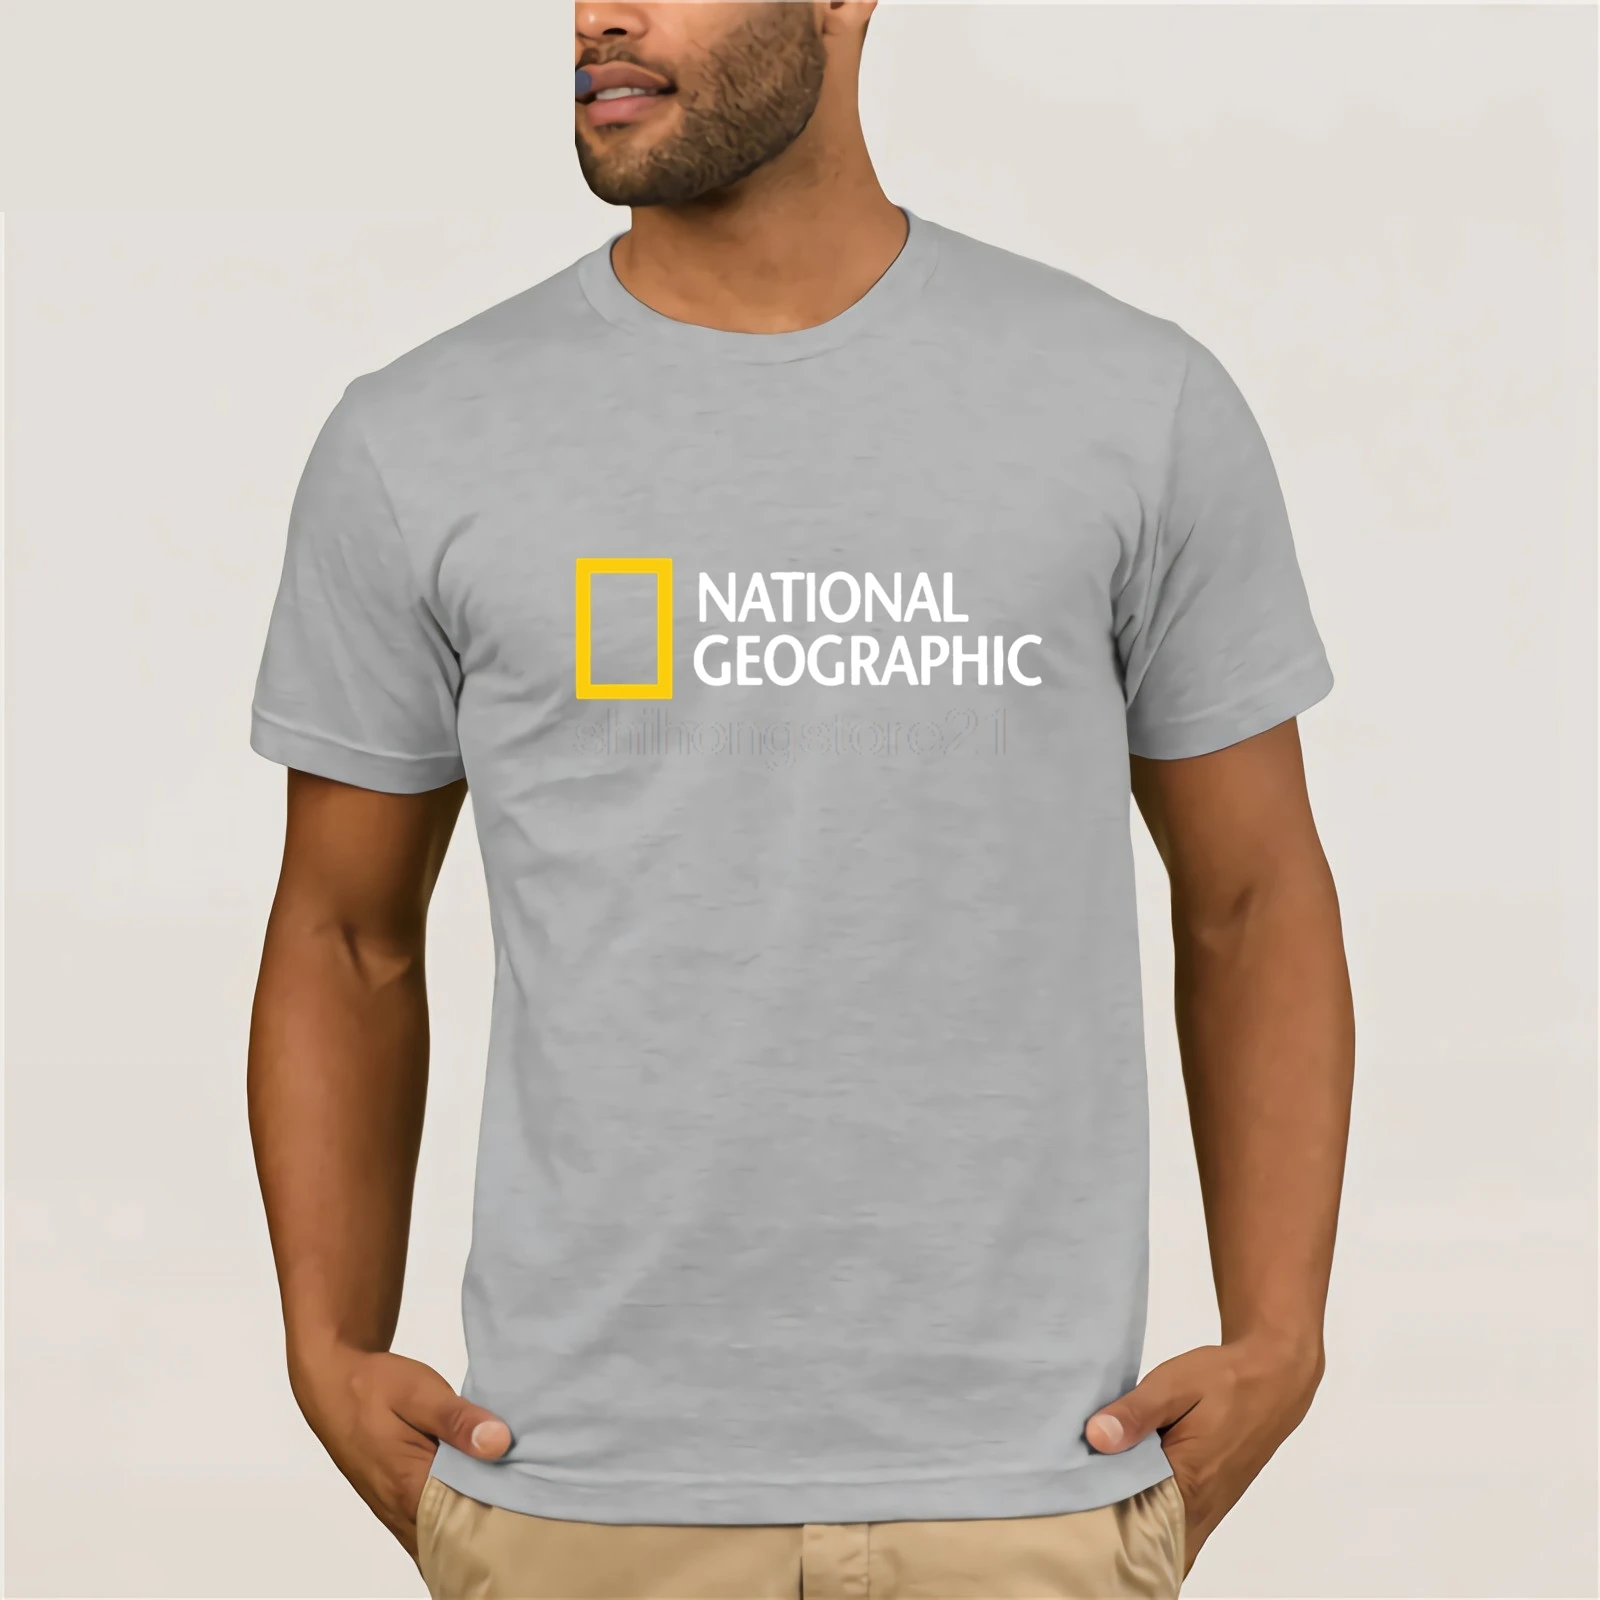 Футболка с логотипом National Geographic футболка одежда короткий рукав новинка S-XXL